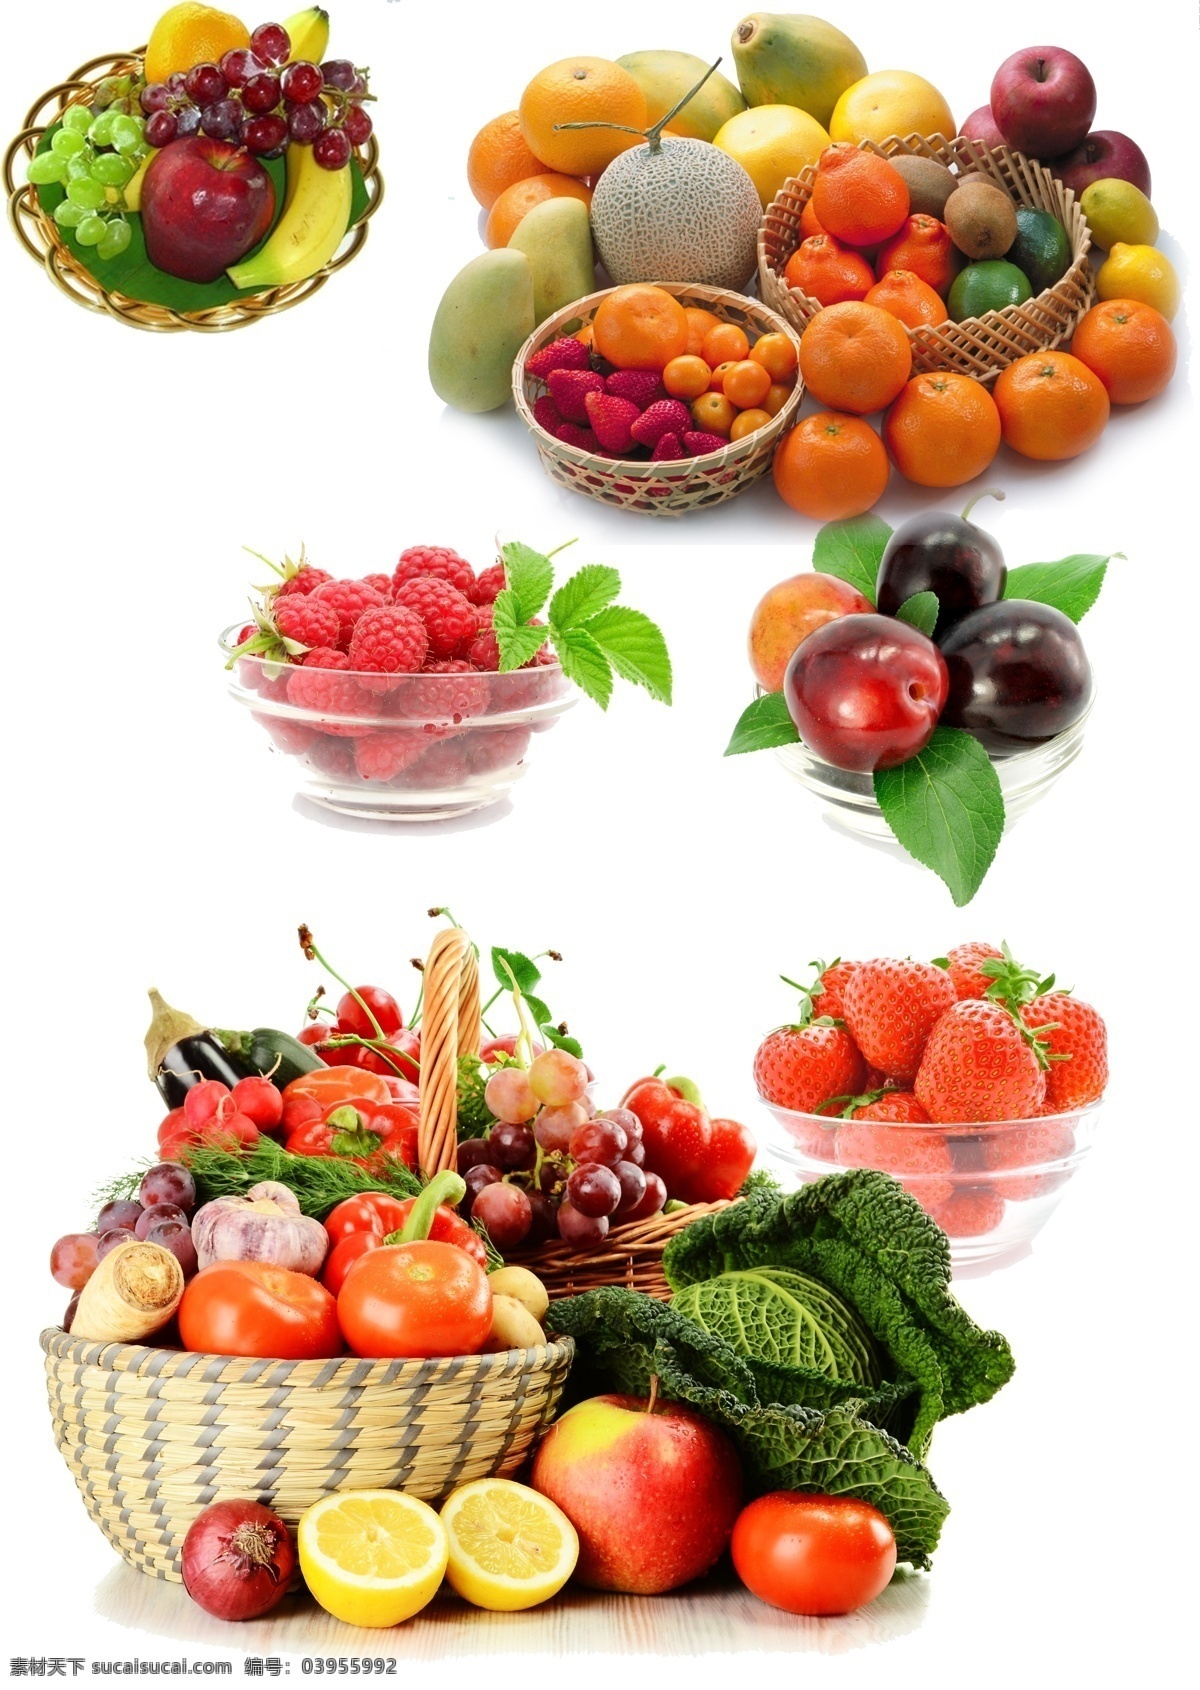 水果篮子蔬菜 模版下载 水果 篮子 蔬菜素材下载 蔬菜模板下载 蔬菜 采摘 草莓 源文件 分层